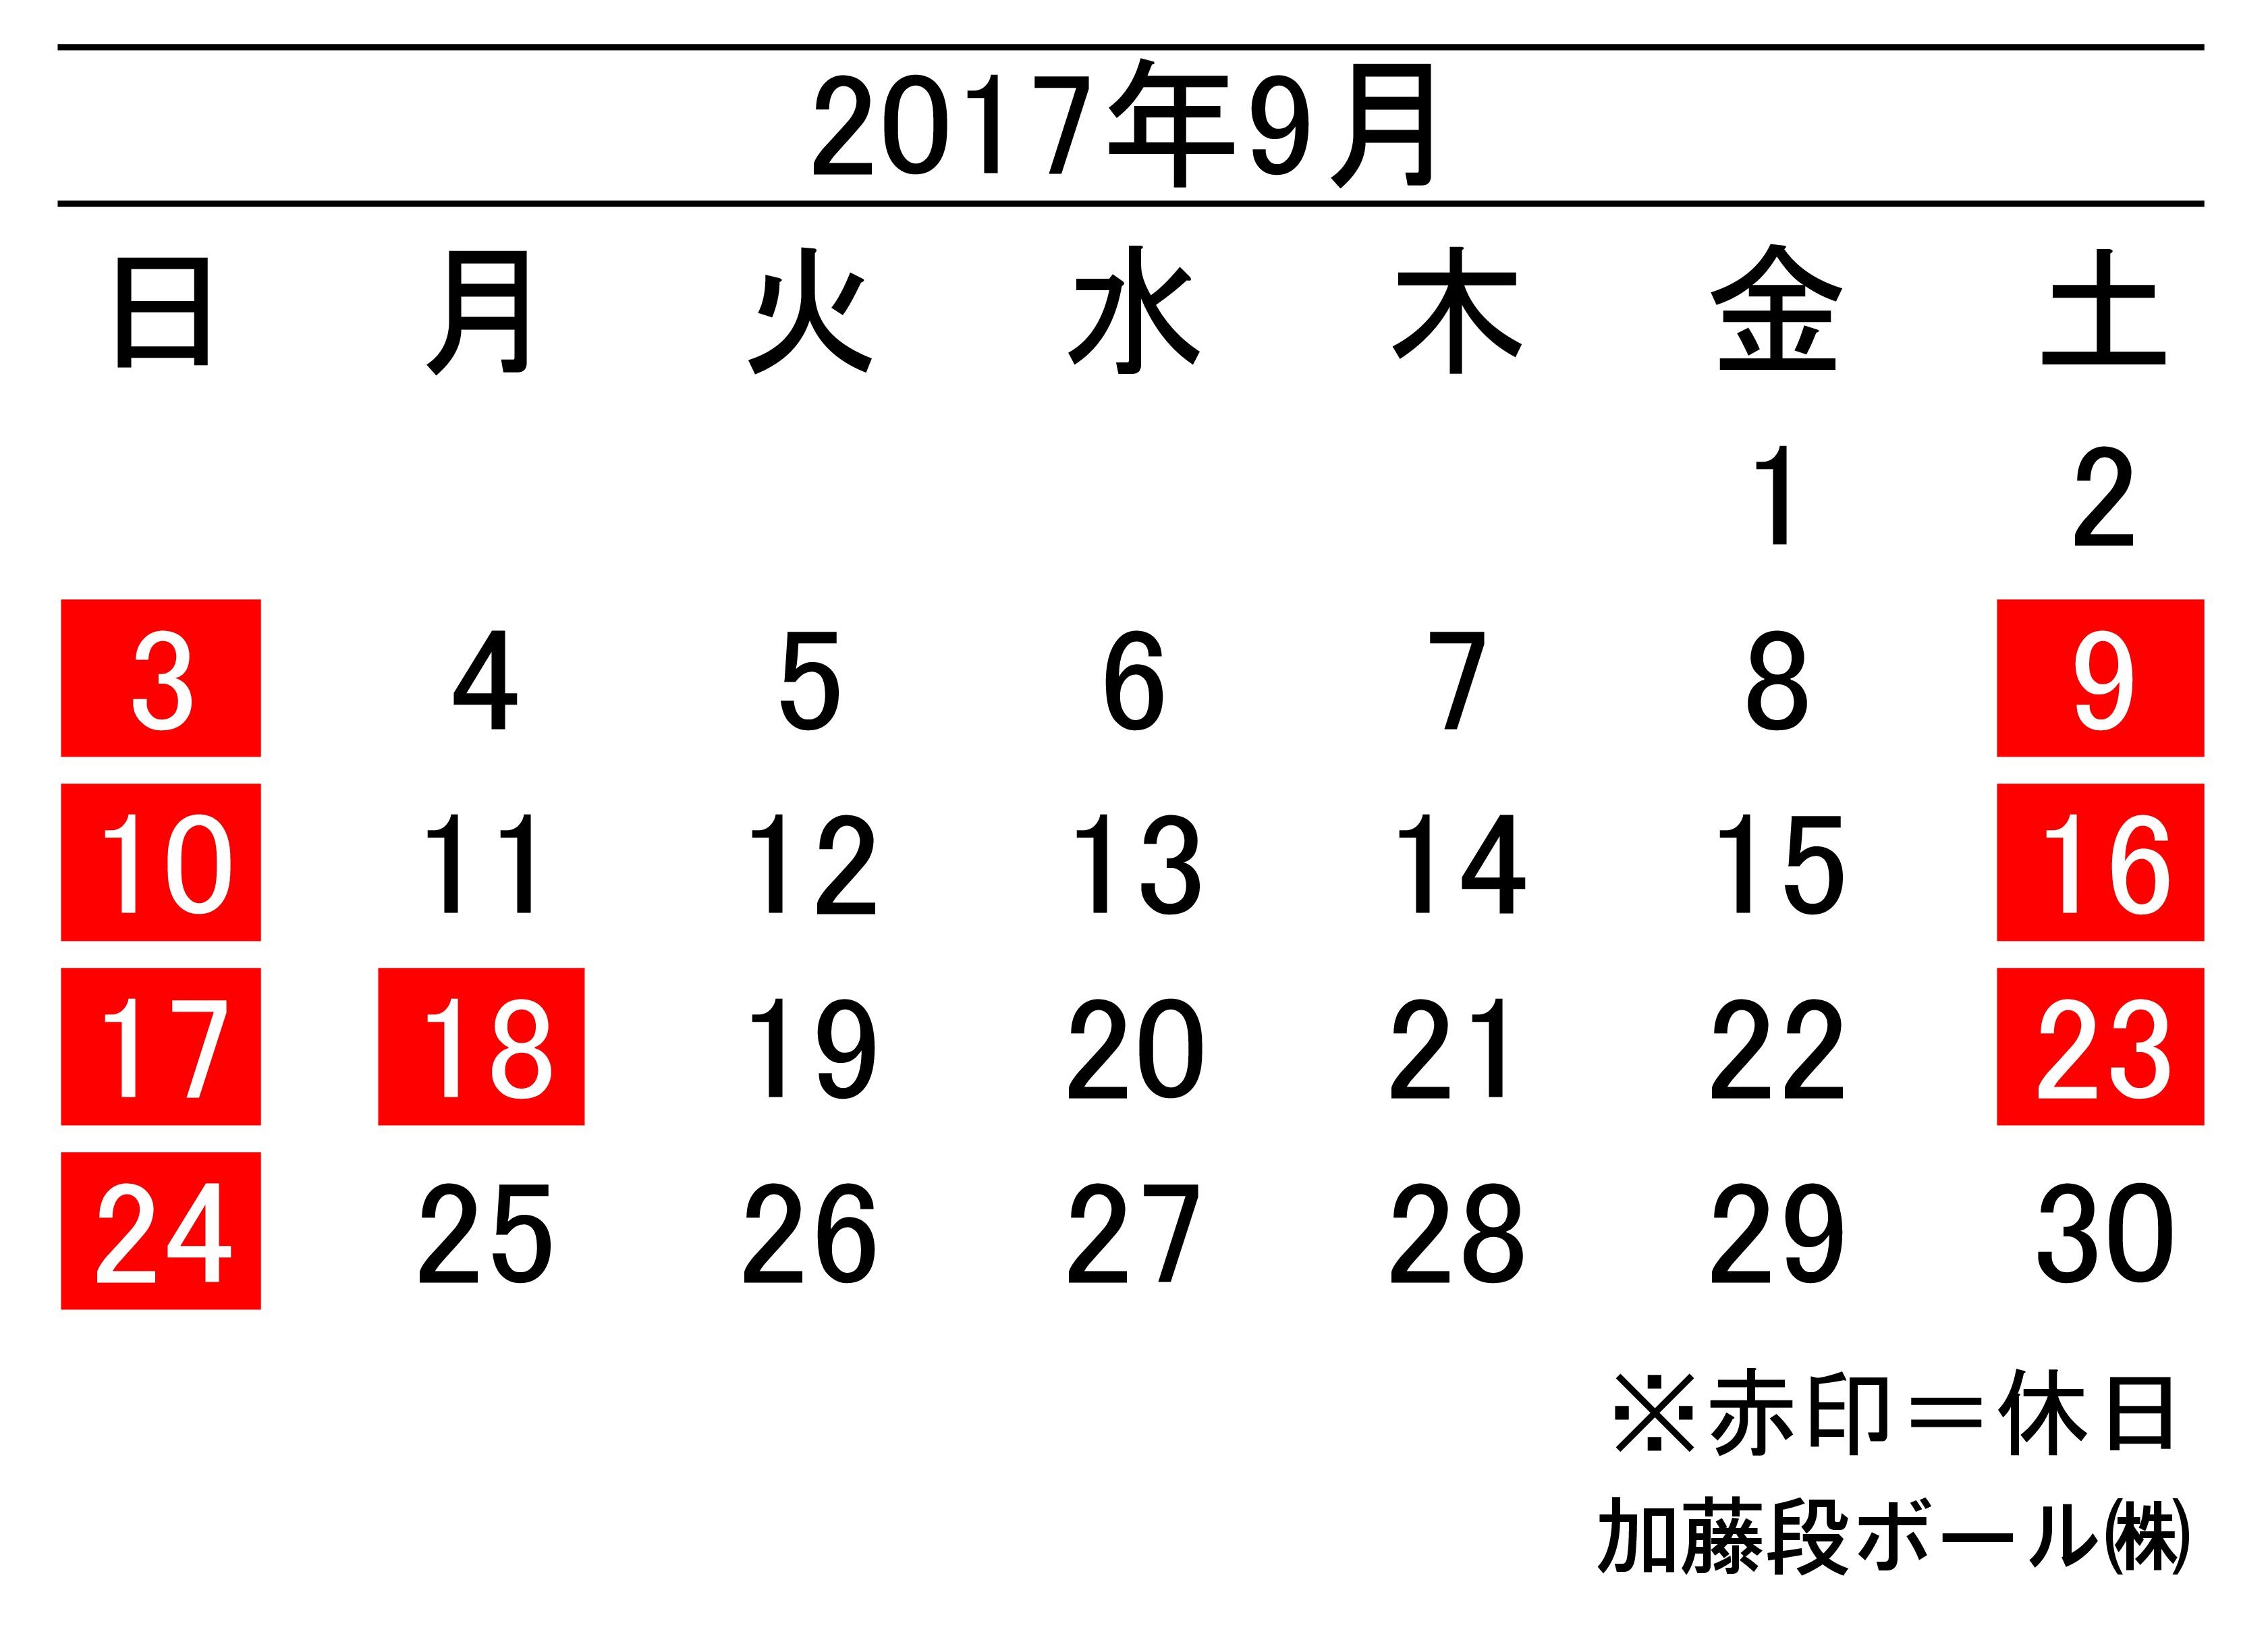 17年9月度営業日カレンダー 加藤段ボール株式会社 千葉 福島 神奈川を中心に段ボール製品 梱包資材の製造と販売